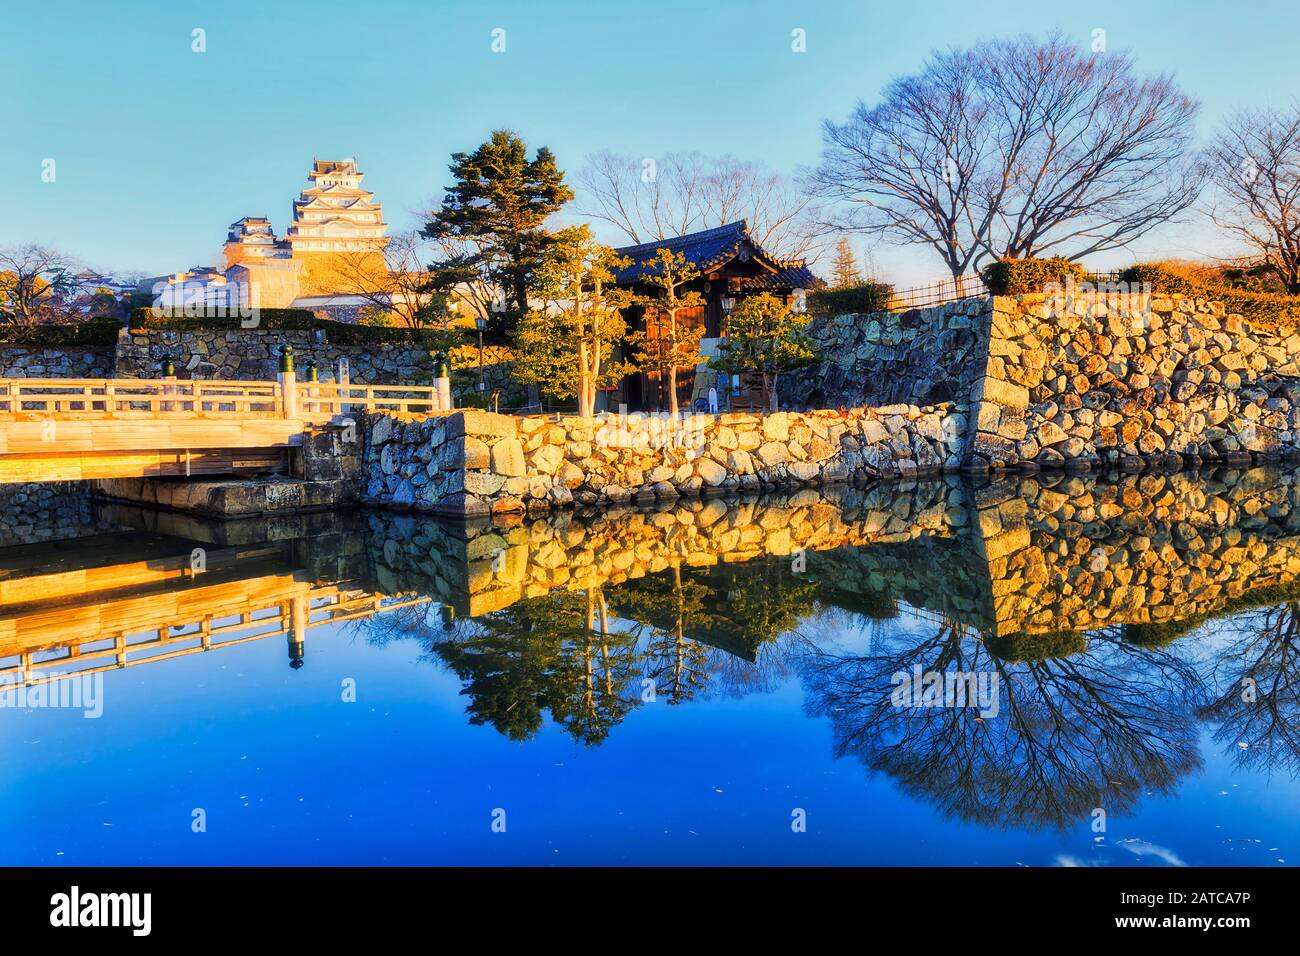 Pont en bois au-dessus de la moat remplie d'eau autour du château blanc près d'Osaka au Japon – Himeji-jo un matin ensoleillé. Banque D'Images